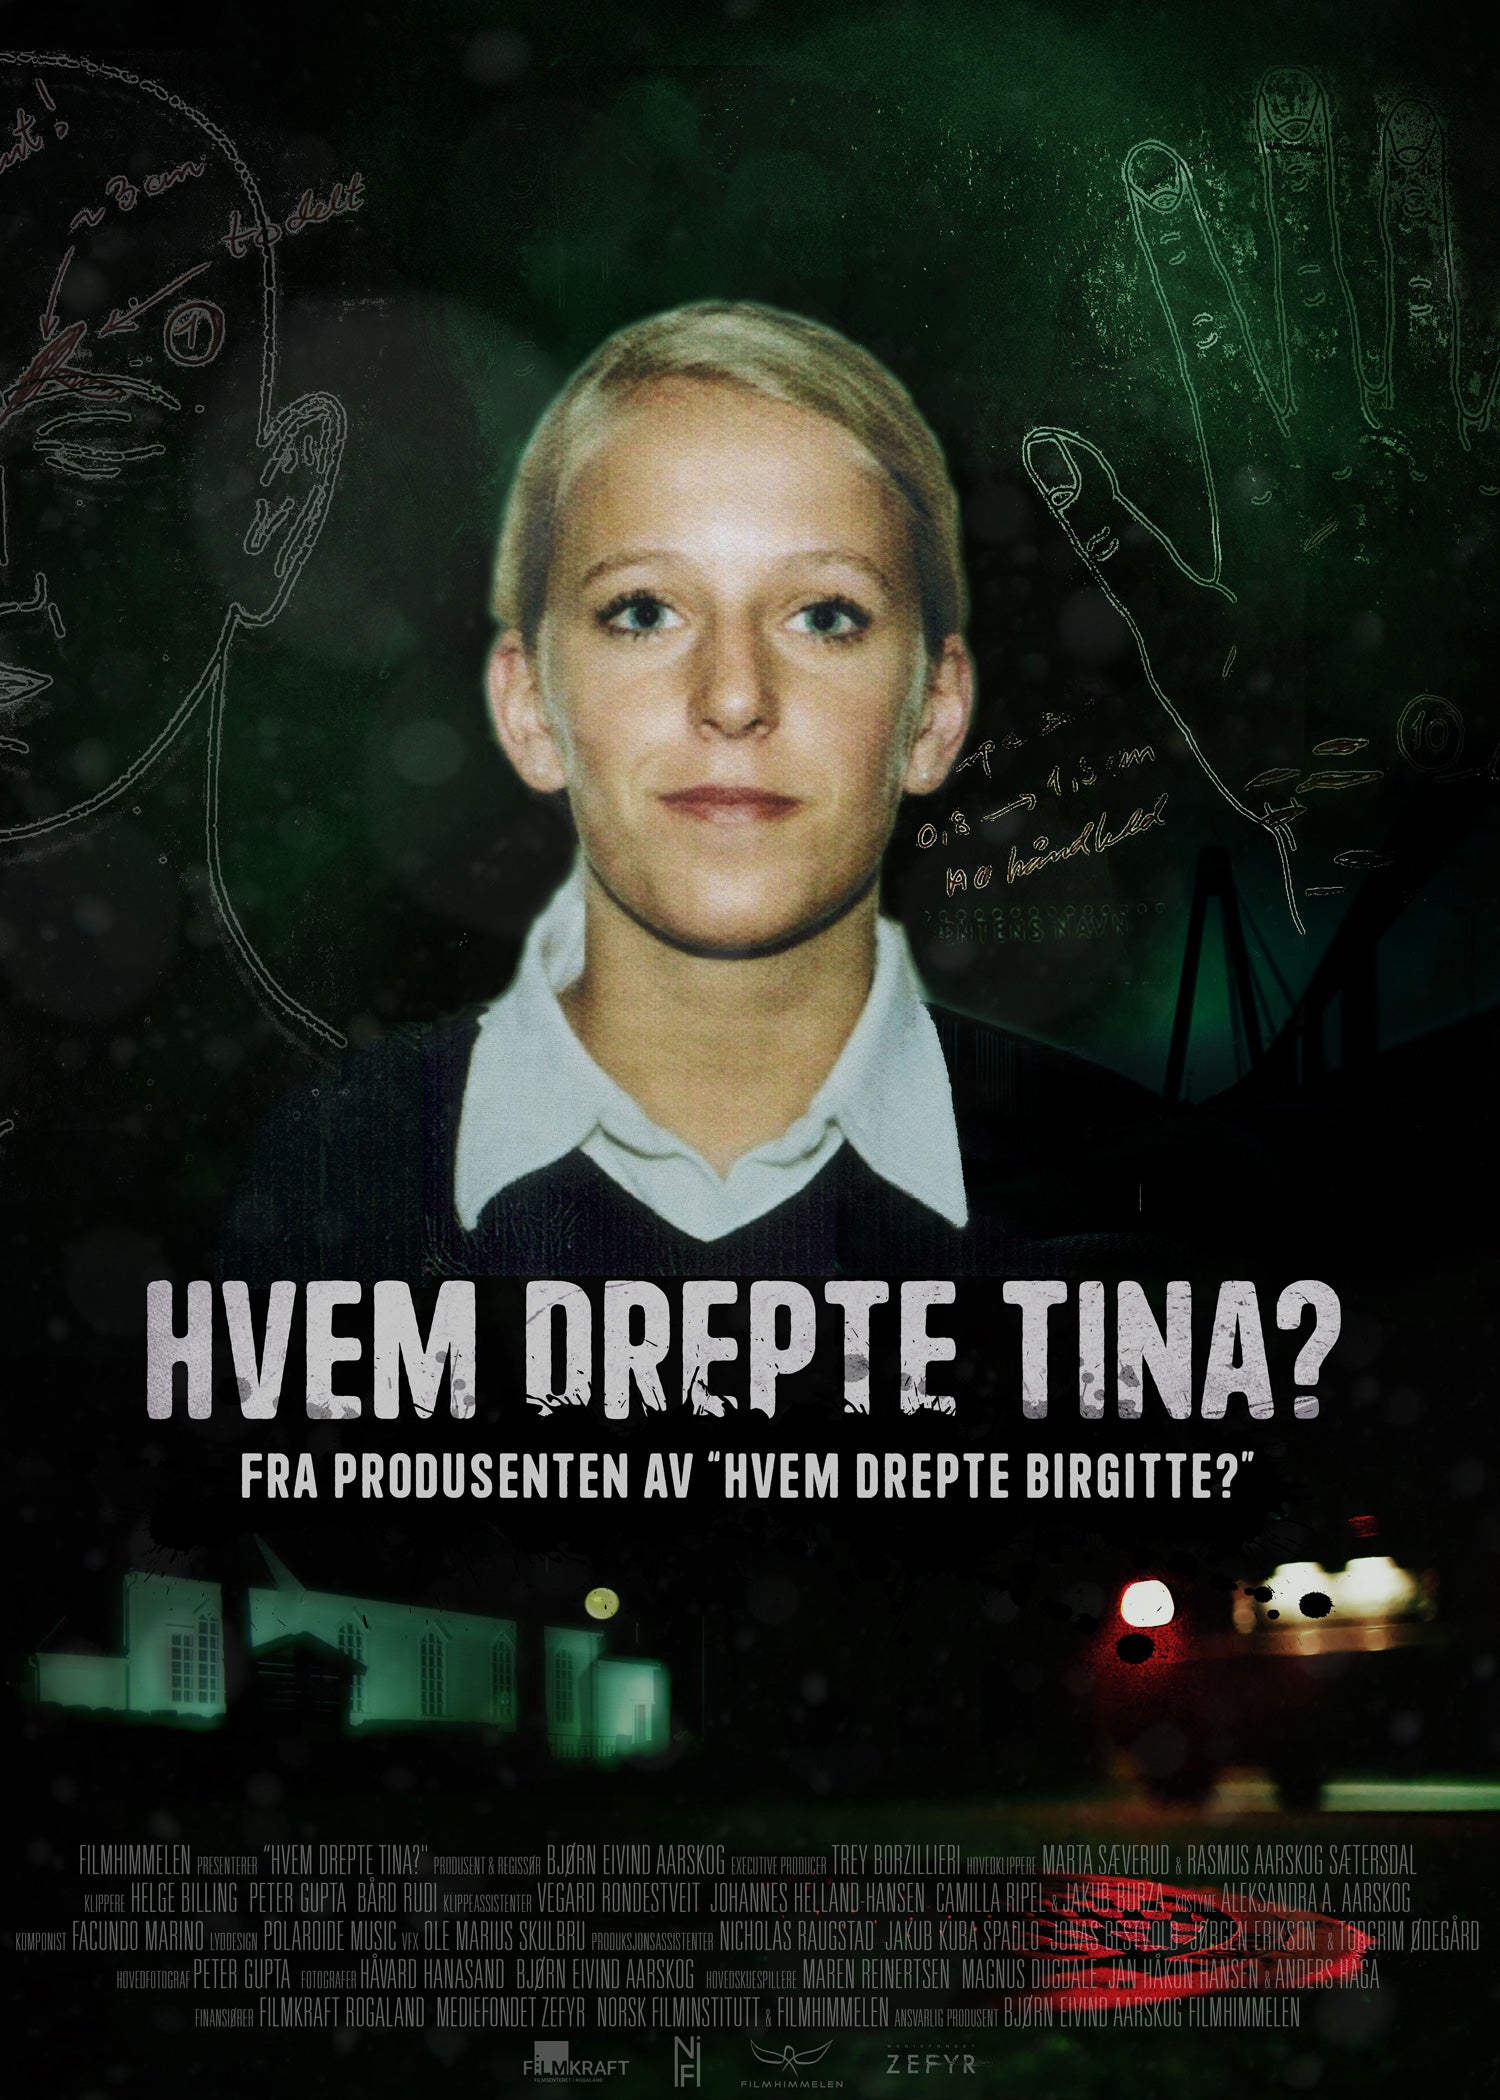 TV ratings for Who Killed Tina? (Hvem Drepte Tina?) in Poland. Filmhimmelen TV series